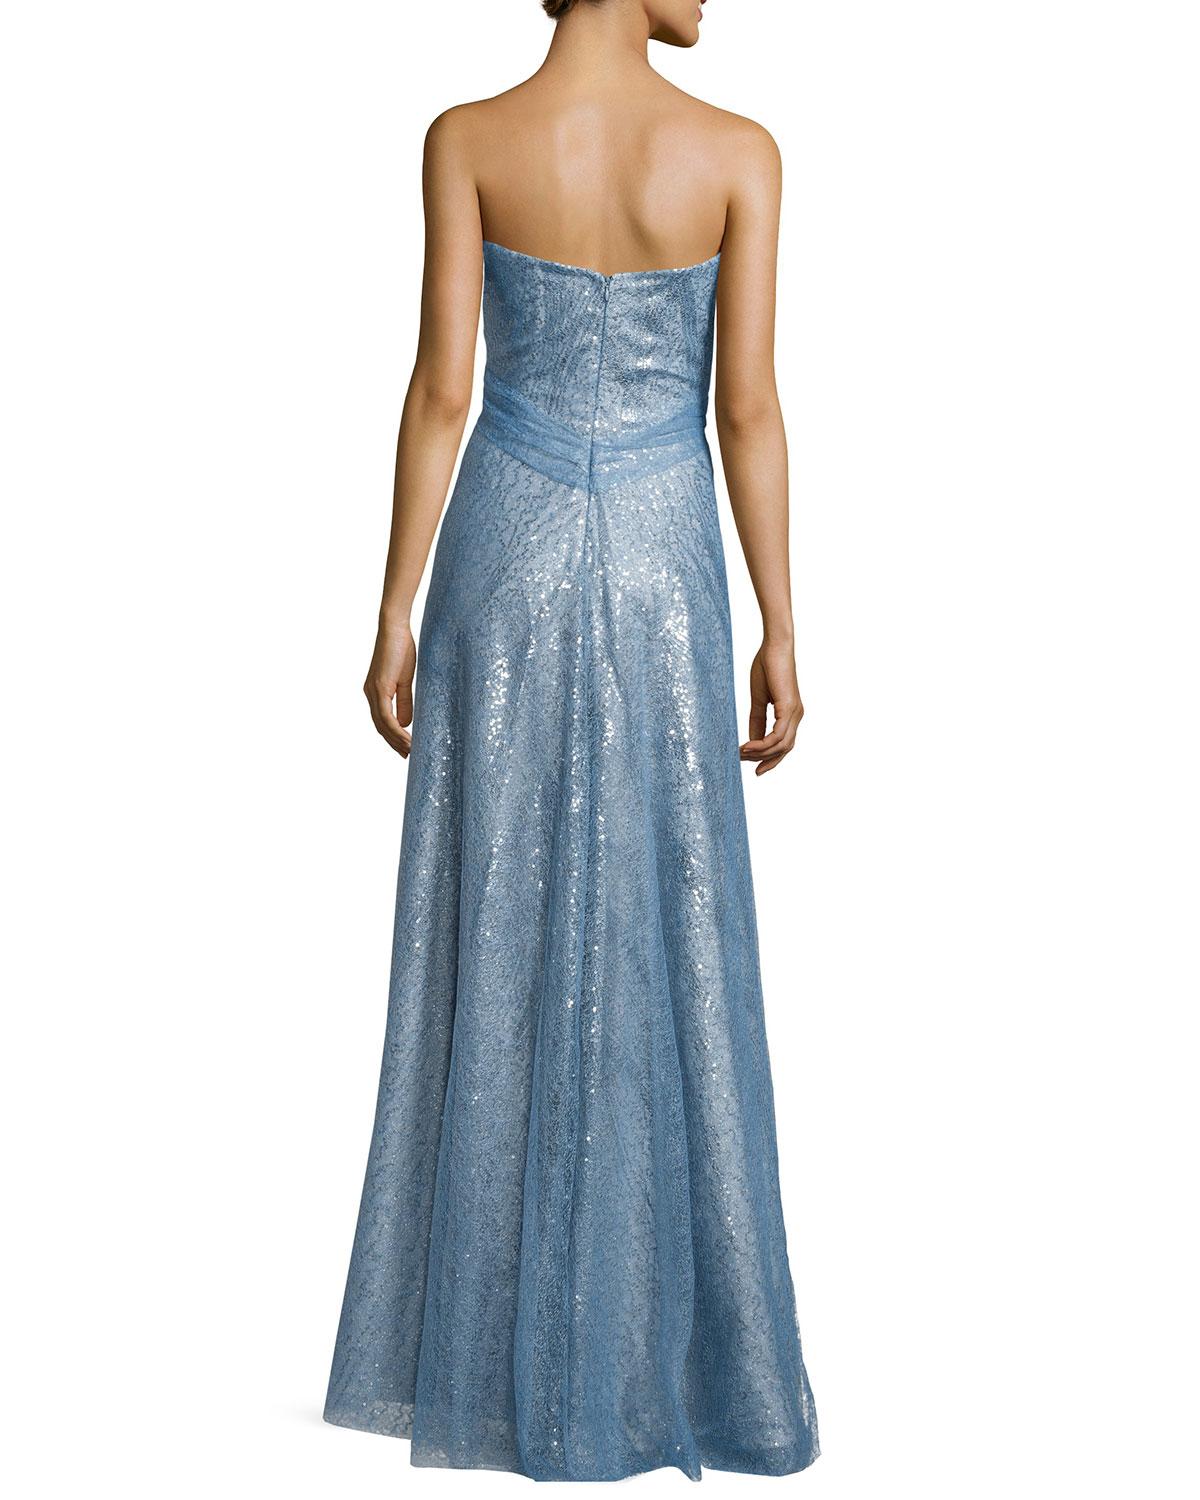 Rene ruiz Strapless Allover Sequin Gown in Blue | Lyst